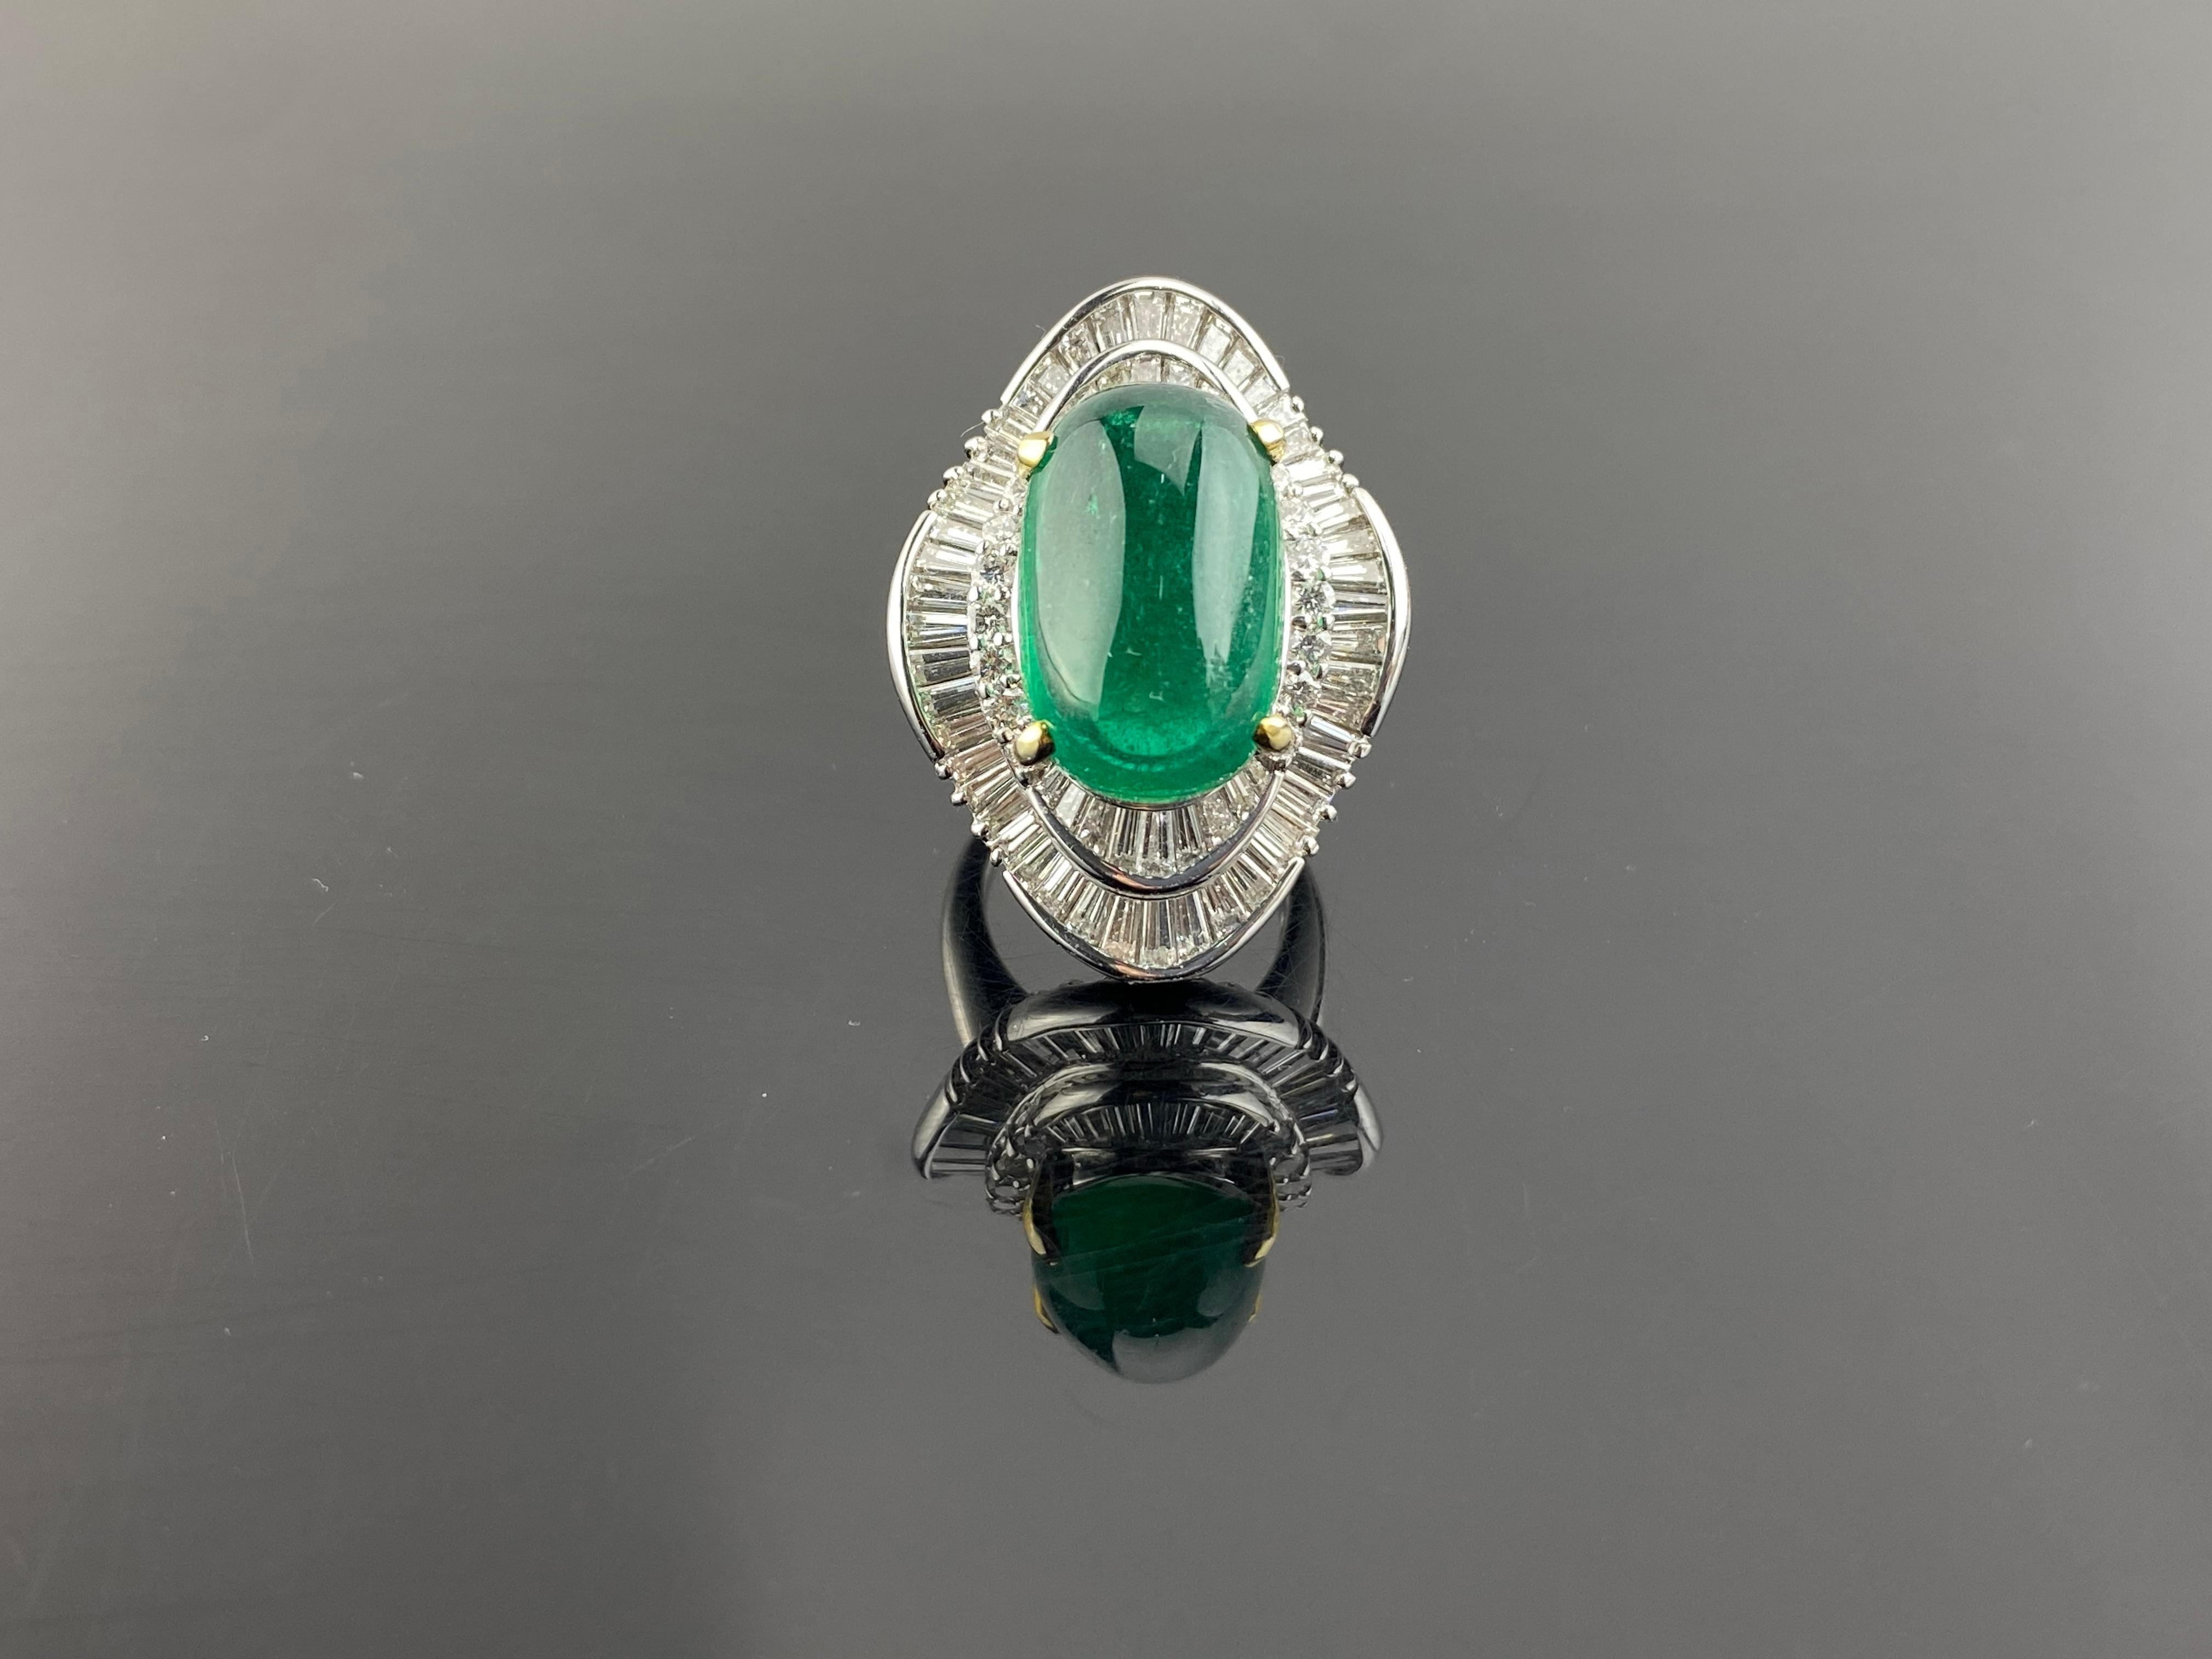 Ein wunderschöner, auffälliger 17,93 Karat schwerer sambischer Smaragd-Cabochon als Mittelstein, umgeben von 4,31 Karat weißen Diamanten in VVS-Qualität - alles in Platin gefasst. Der Smaragd hat eine große lebendige grüne Farbe, und ist absolut